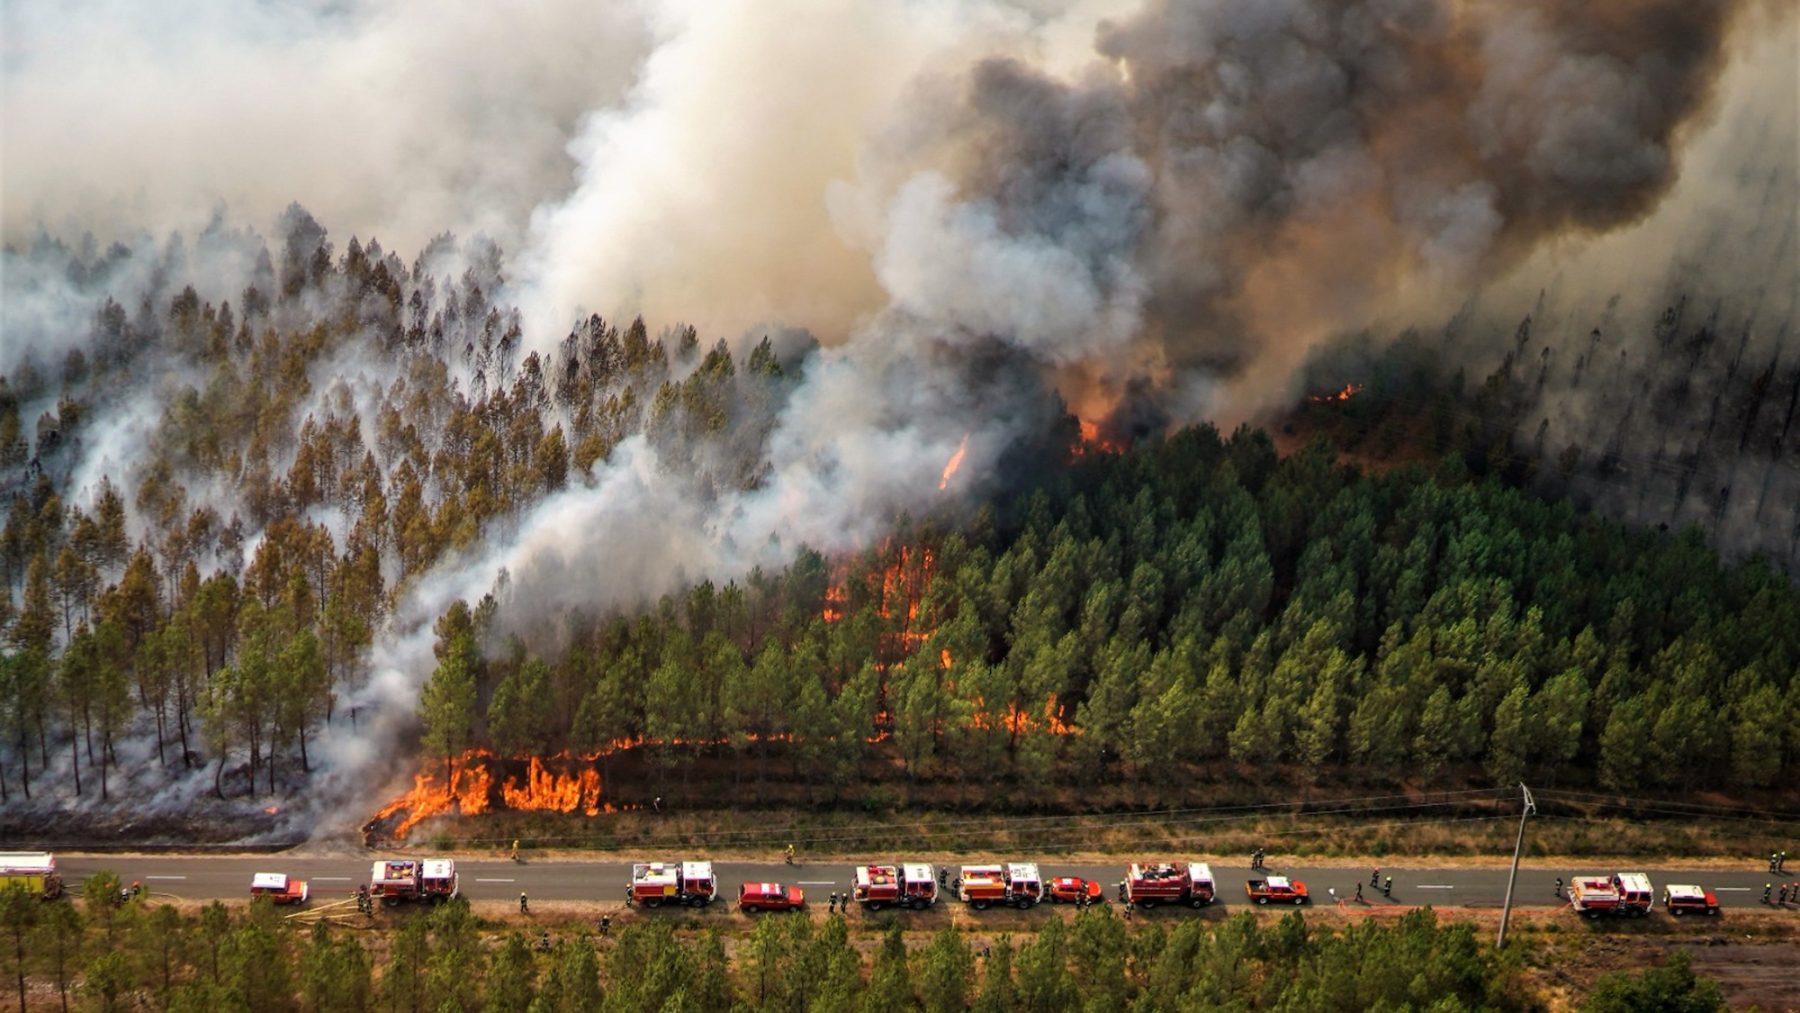 Frankrijk vecht tegen bosbranden, ook in de Ardèche is het raak